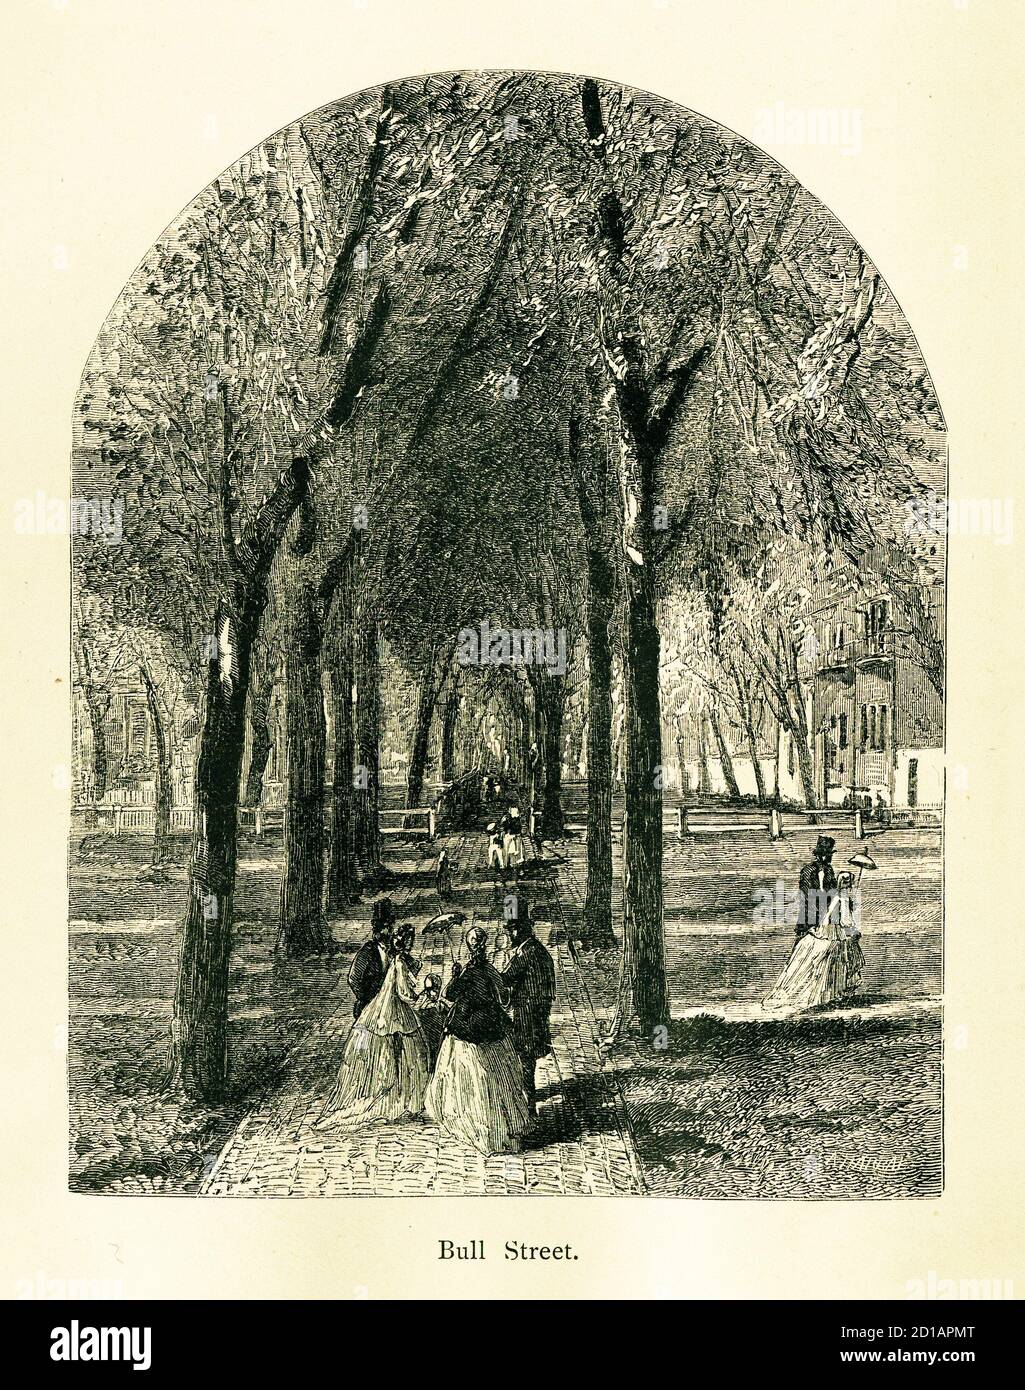 Incisione del XIX secolo di Bull Street a Savannah, Georgia, USA. Illustrazione pubblicata in America pittoresca o la terra in cui viviamo (D. Appleton e C. Foto Stock